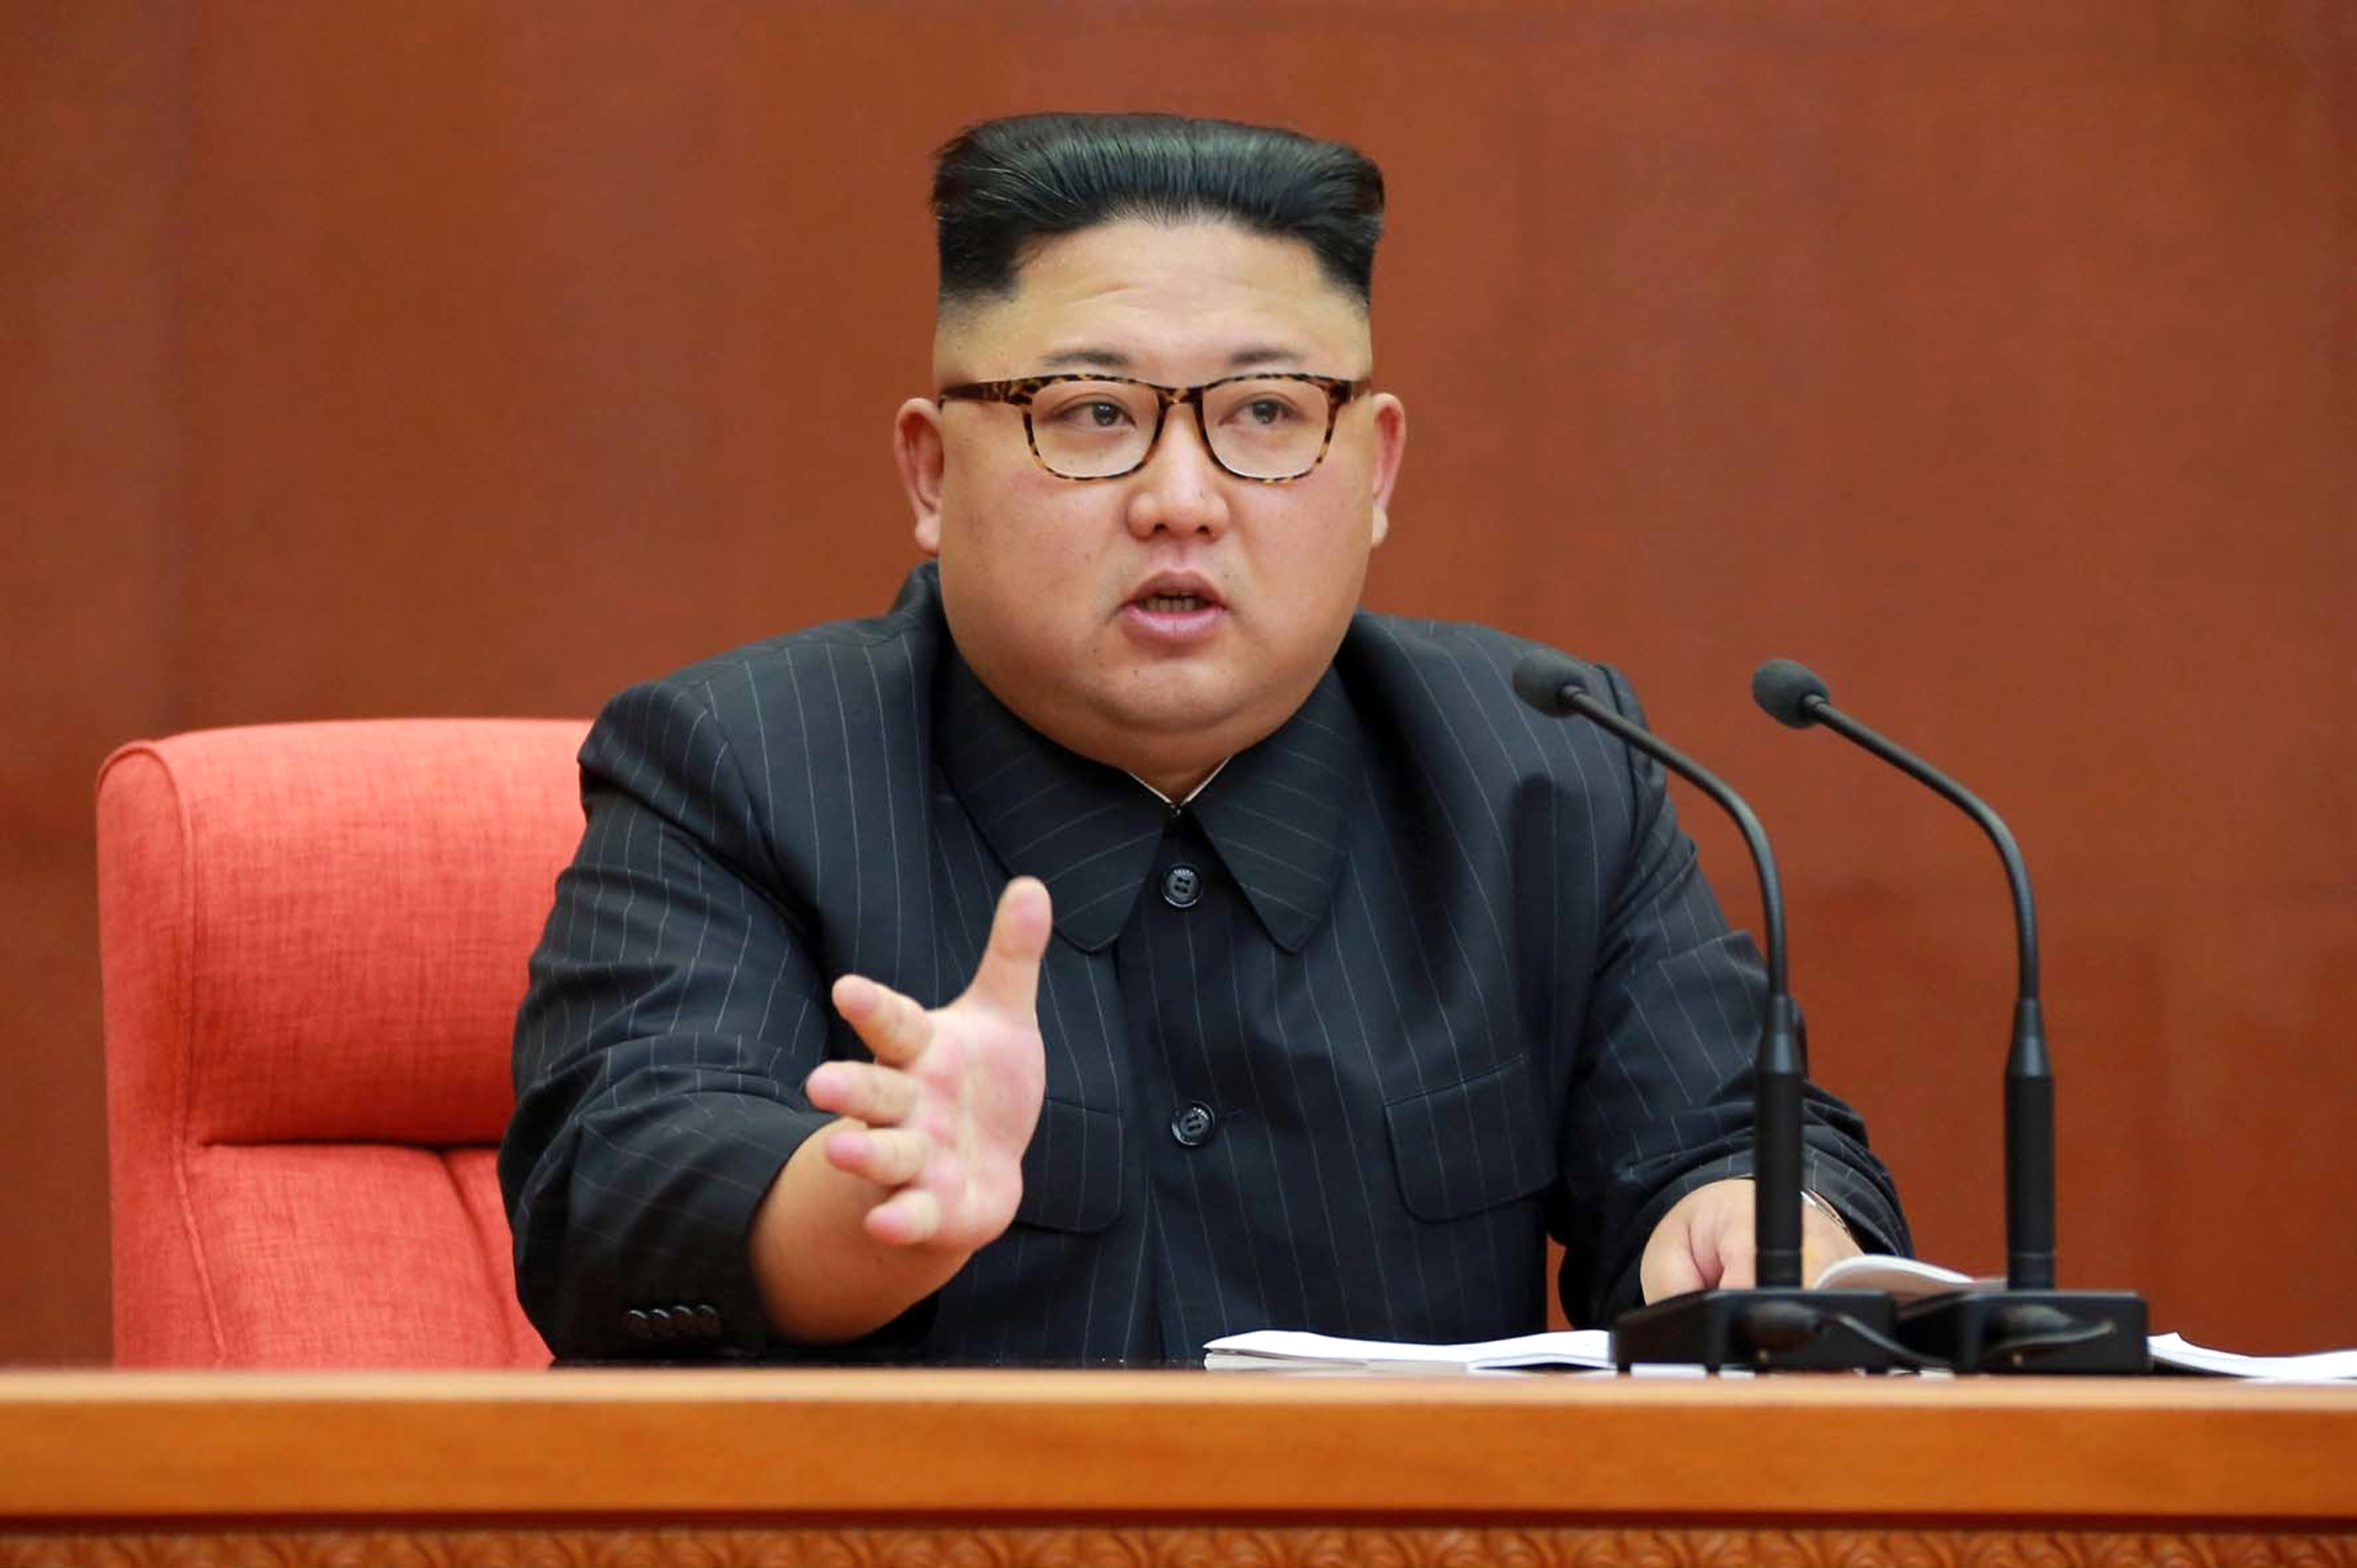 Habrá guerra nuclear en cualquier momento: Norcorea